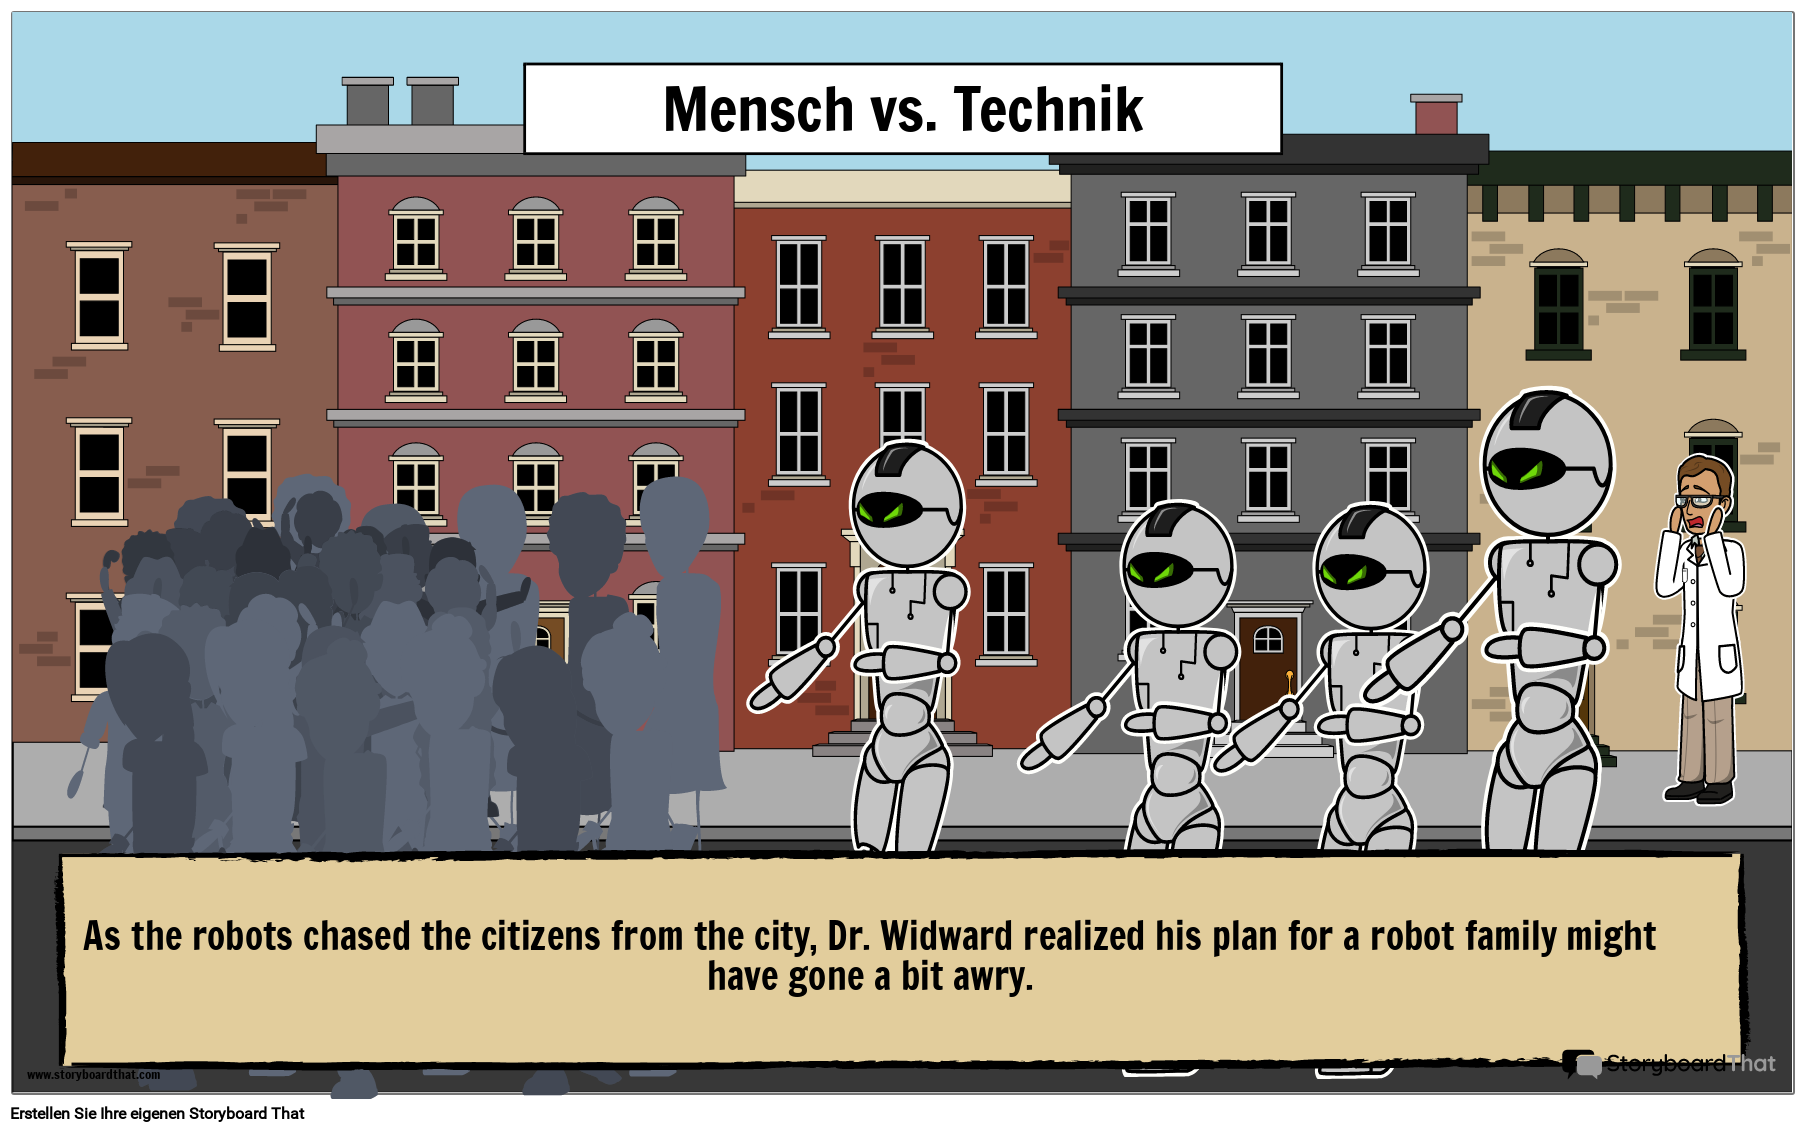 illustrierendes-plakat-zum-konflikt-zwischen-charakter-und-technologie